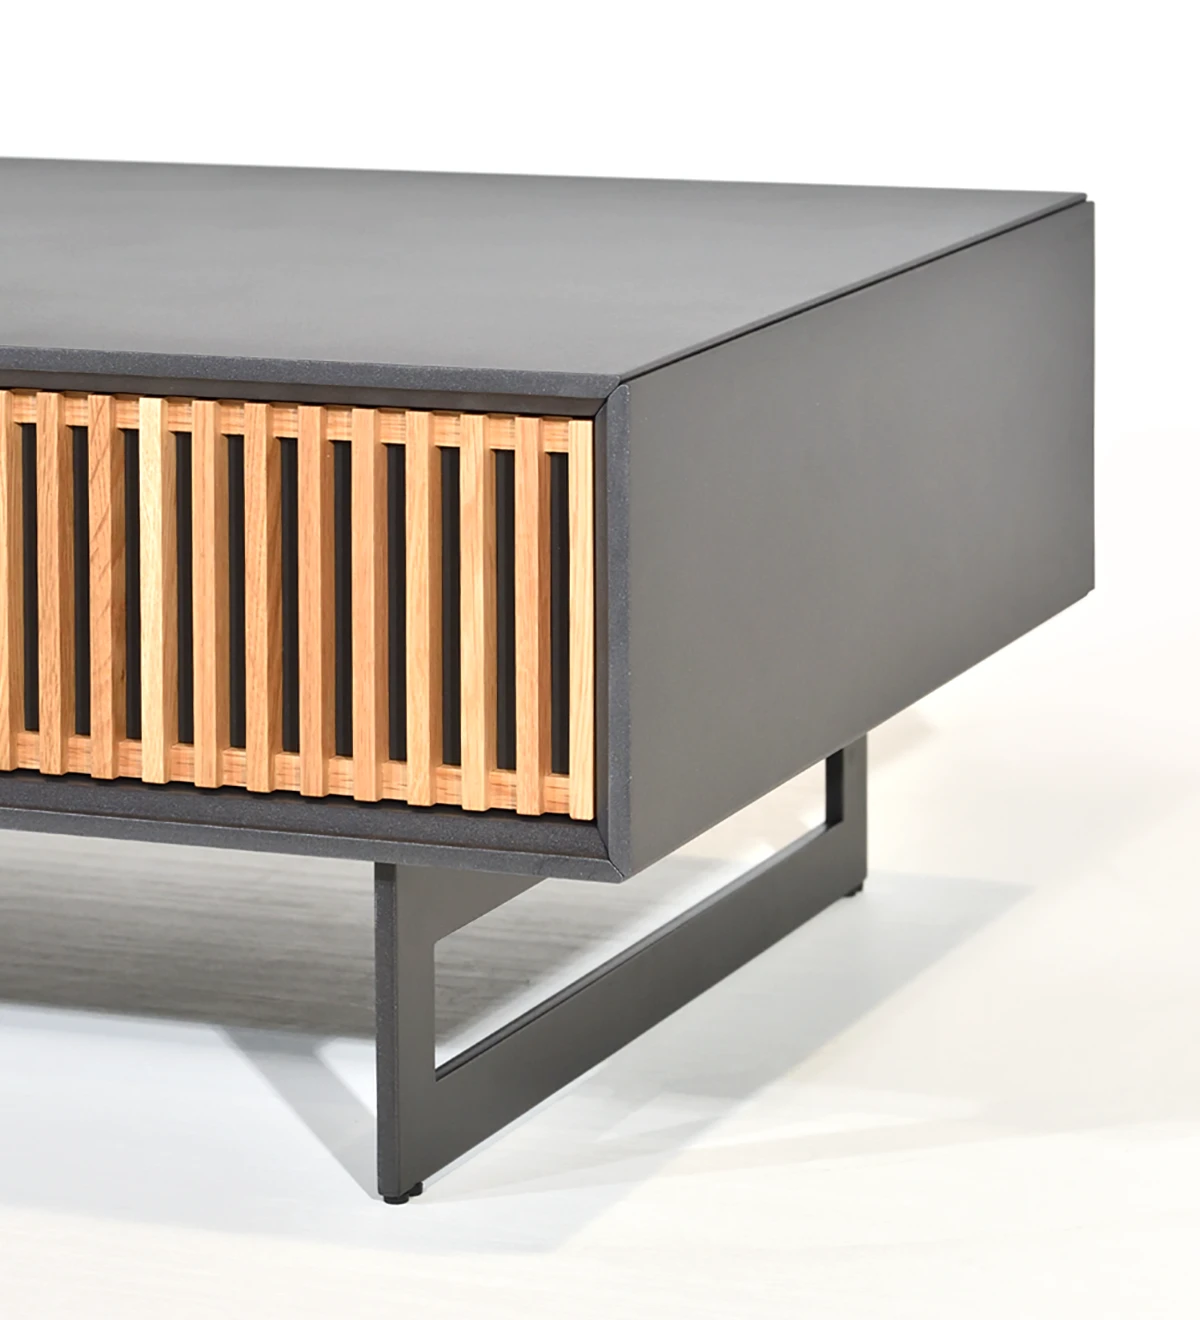 Table basse rectangulaire avec 1 tiroir en chêne naturel, structure laquée perle et pieds en métal laqué noir métallisé.